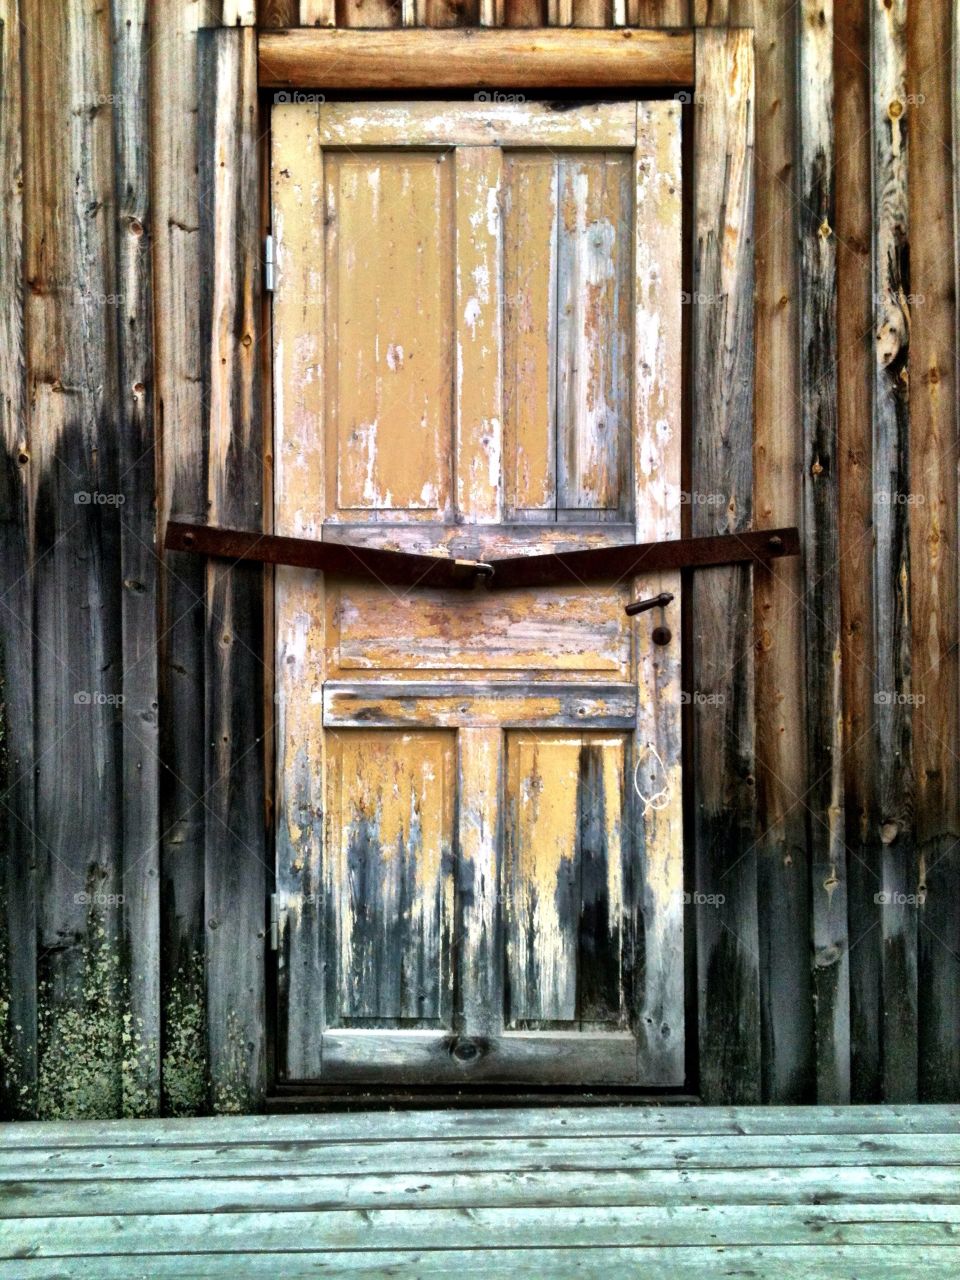 sweden yellow wood door by lenacarlsson